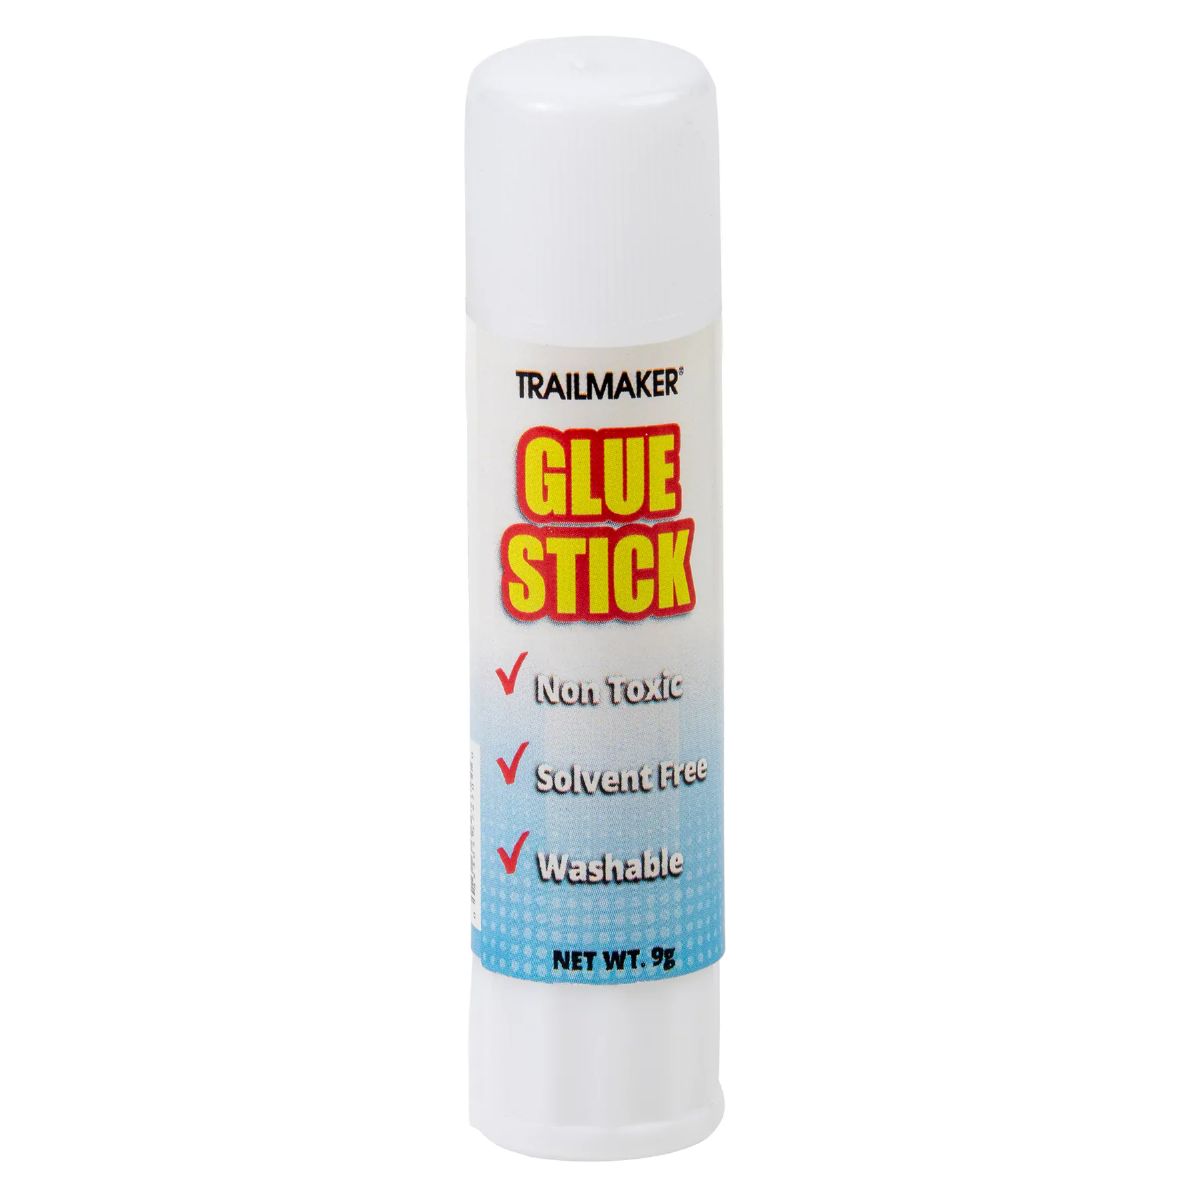 100 Pieces of Glue Stick (9 Grams)